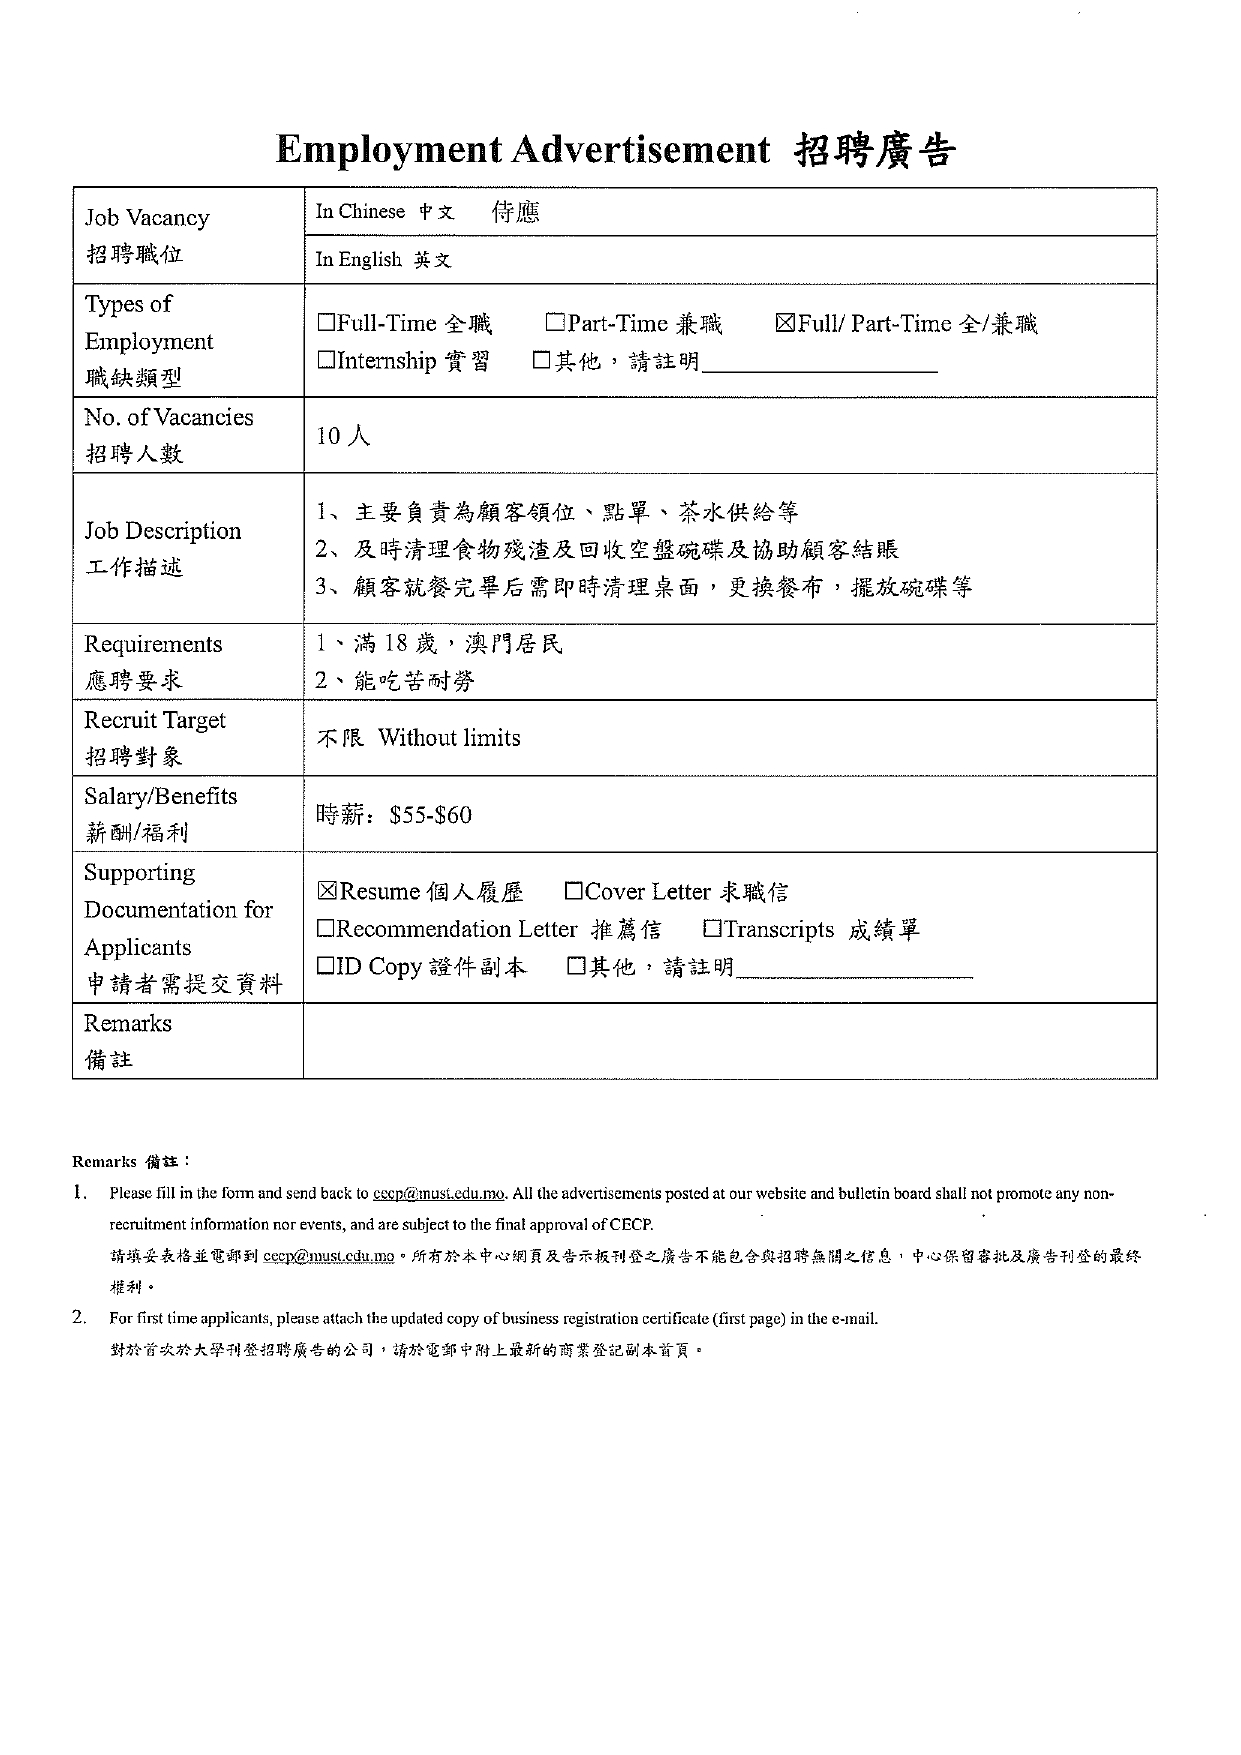 20230704 協成海鮮火鍋招聘資料 page 0002